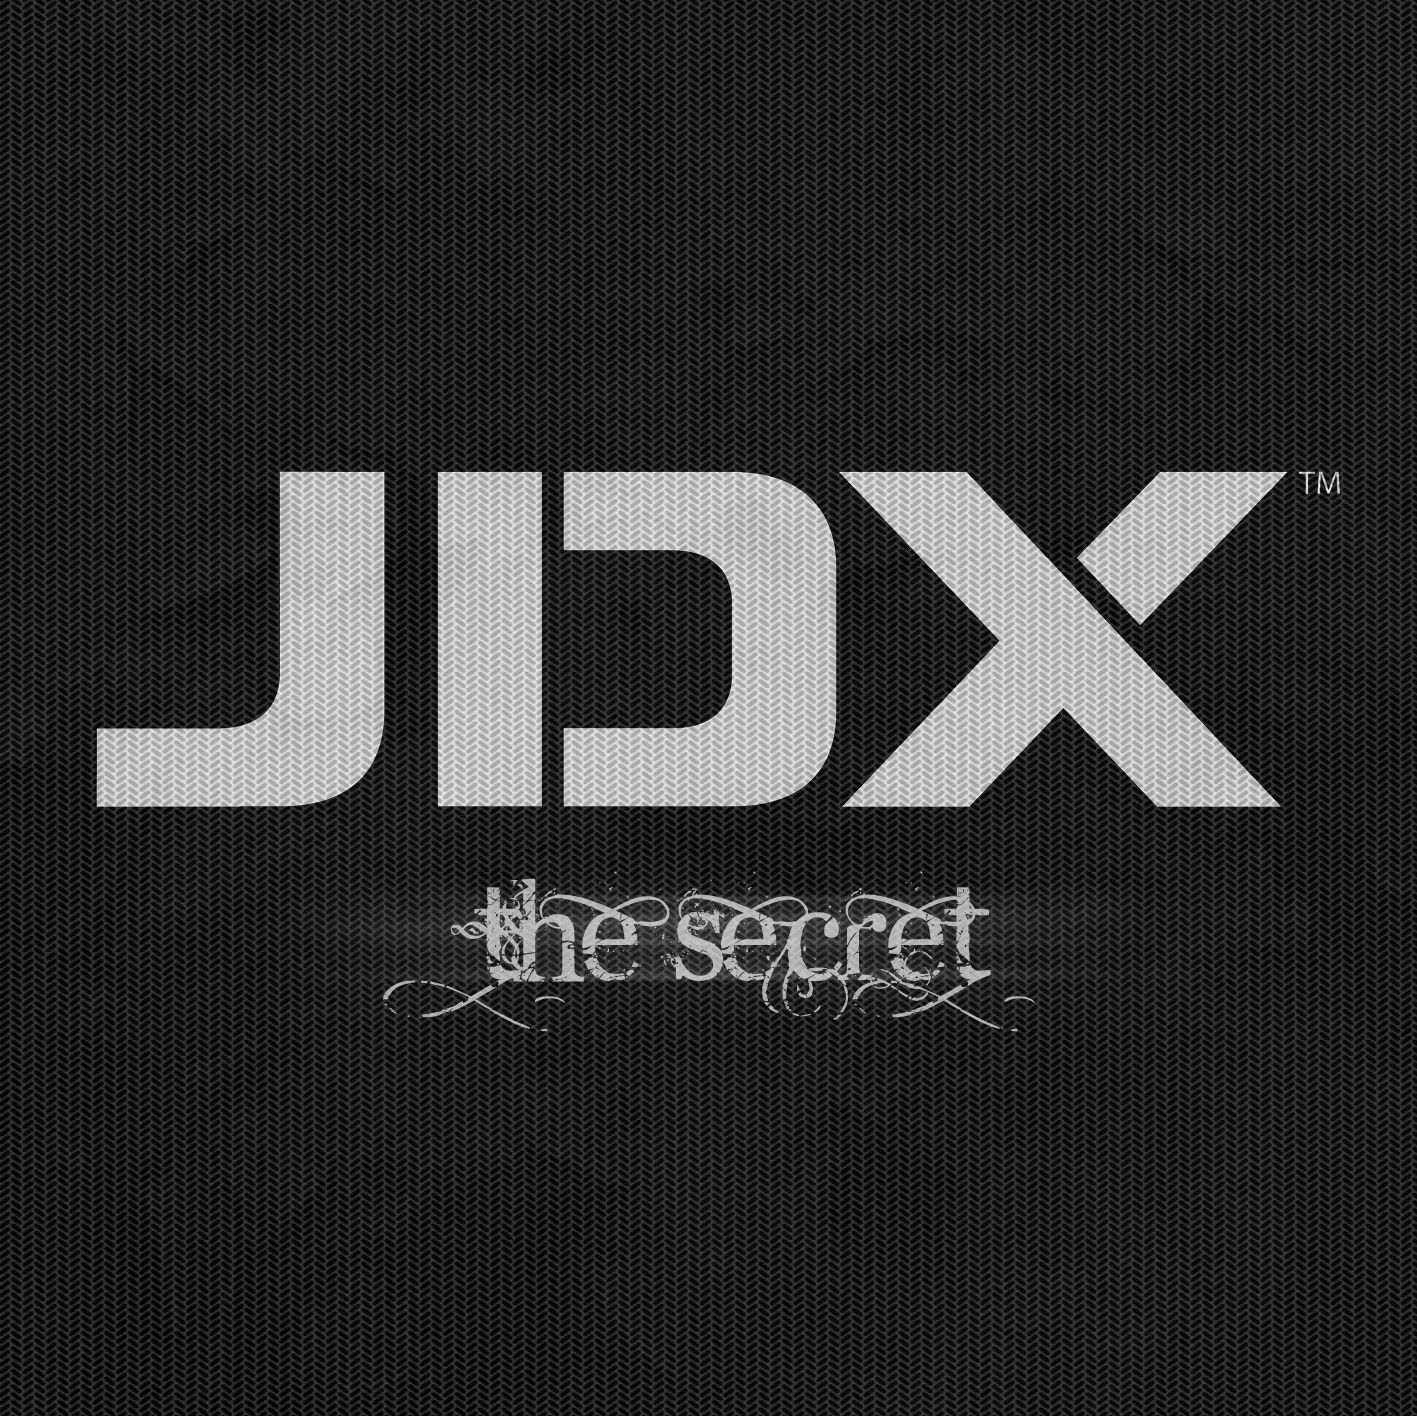 JDX - The Secret album art front.